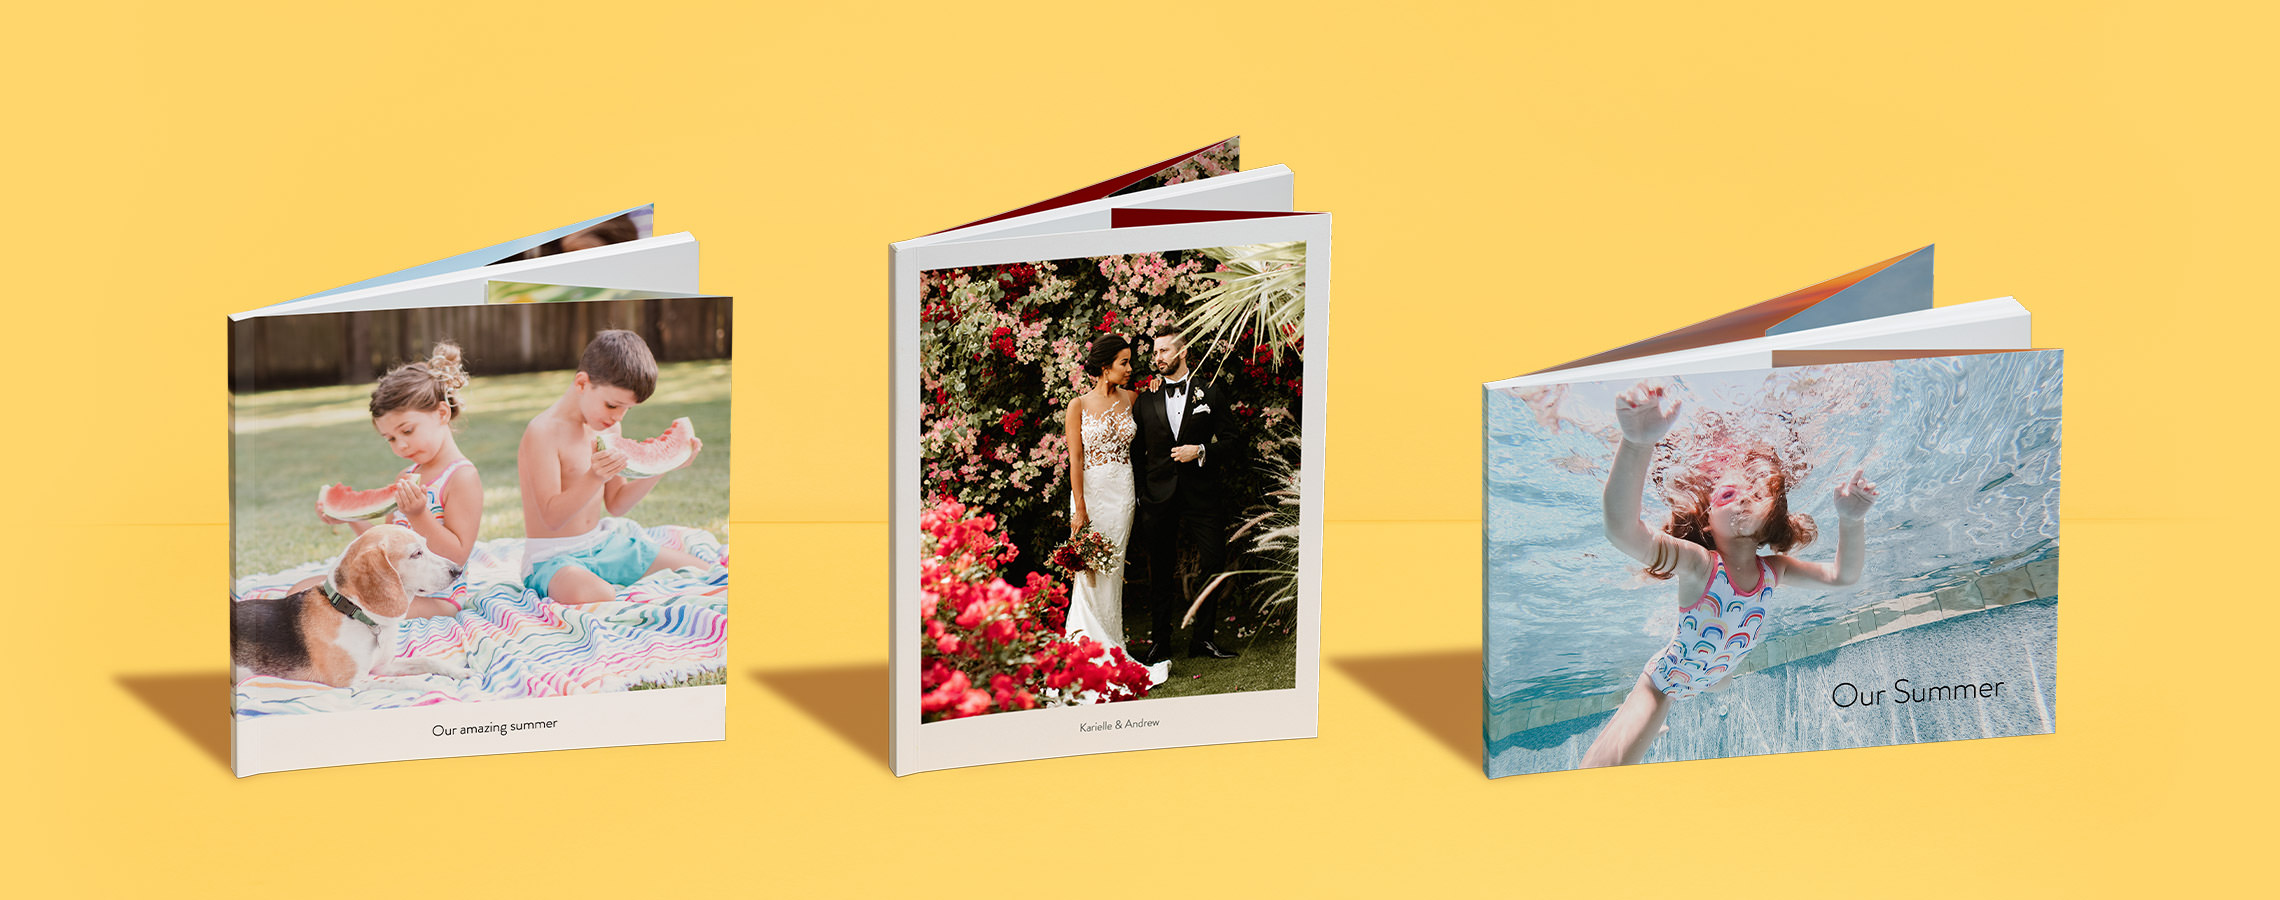 Três álbuns de fotografias de capa mole vertical com diferentes motivos.